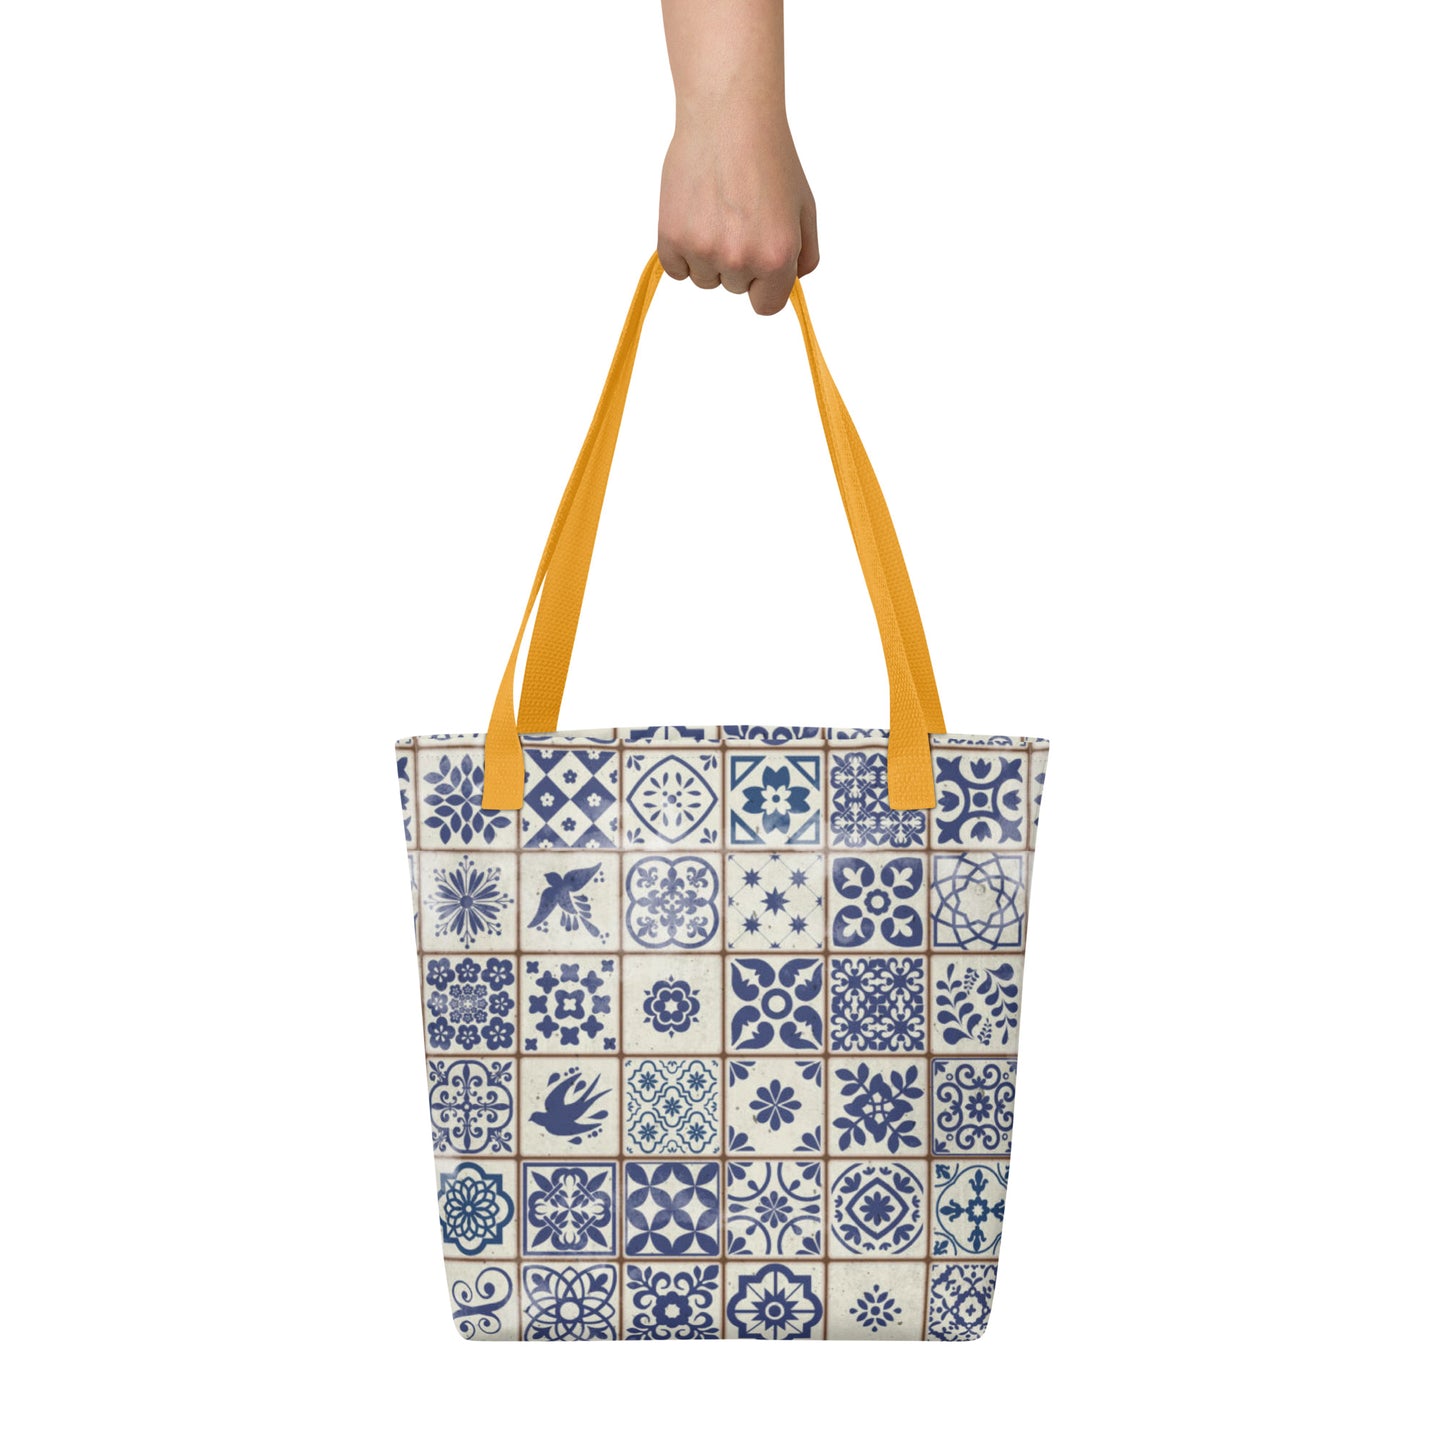 Portuguese Tile Tote Bag - The Global Wanderer